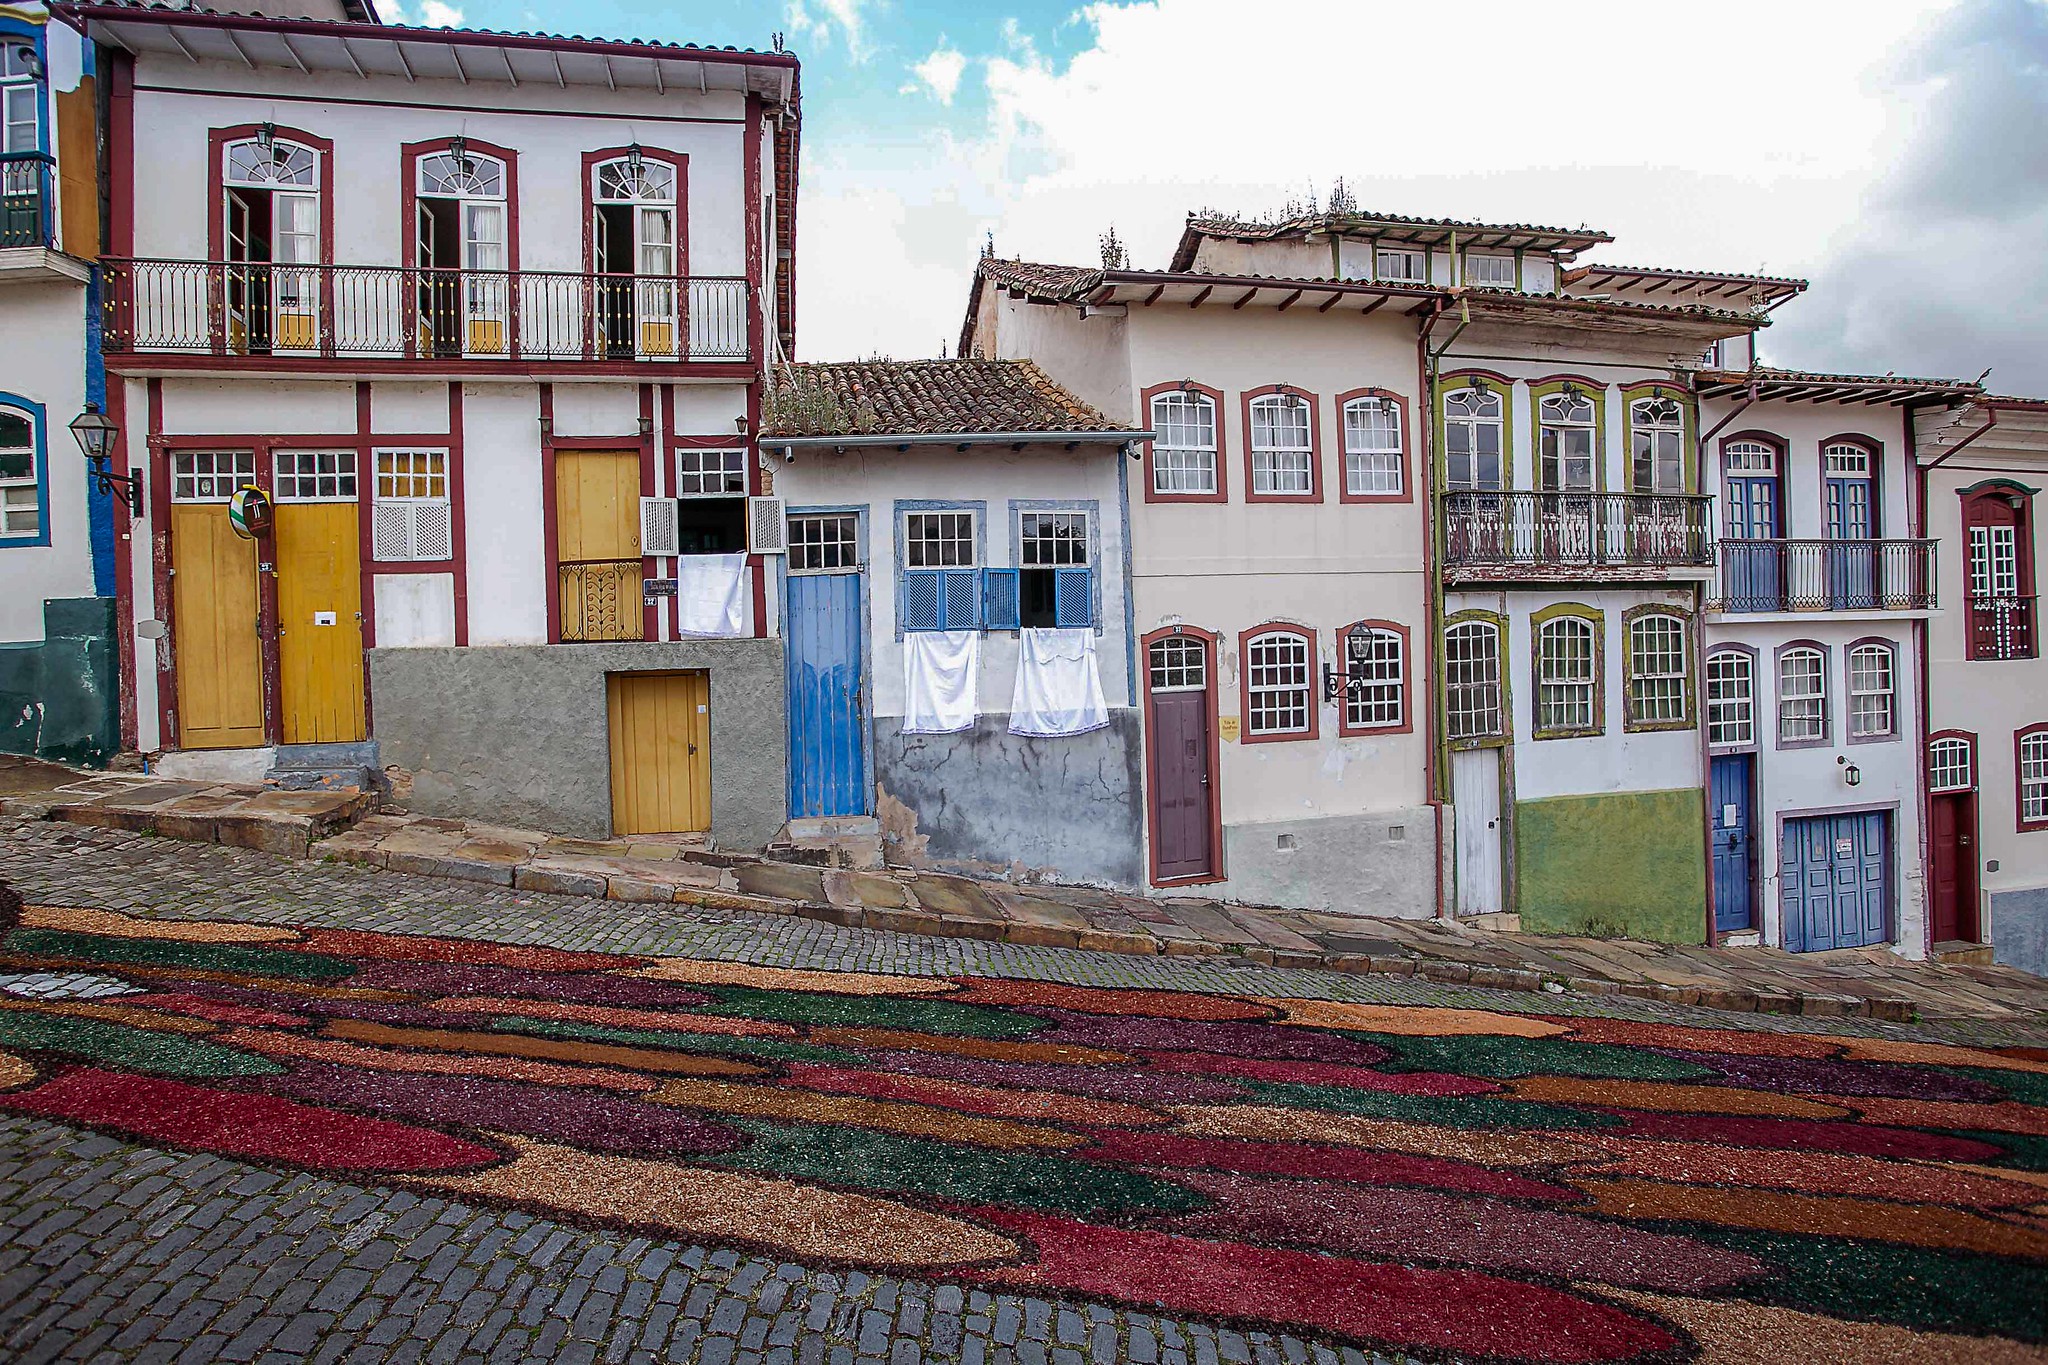 Tapete devocional em Ouro Preto - Foto: Ane Souz/Flickr